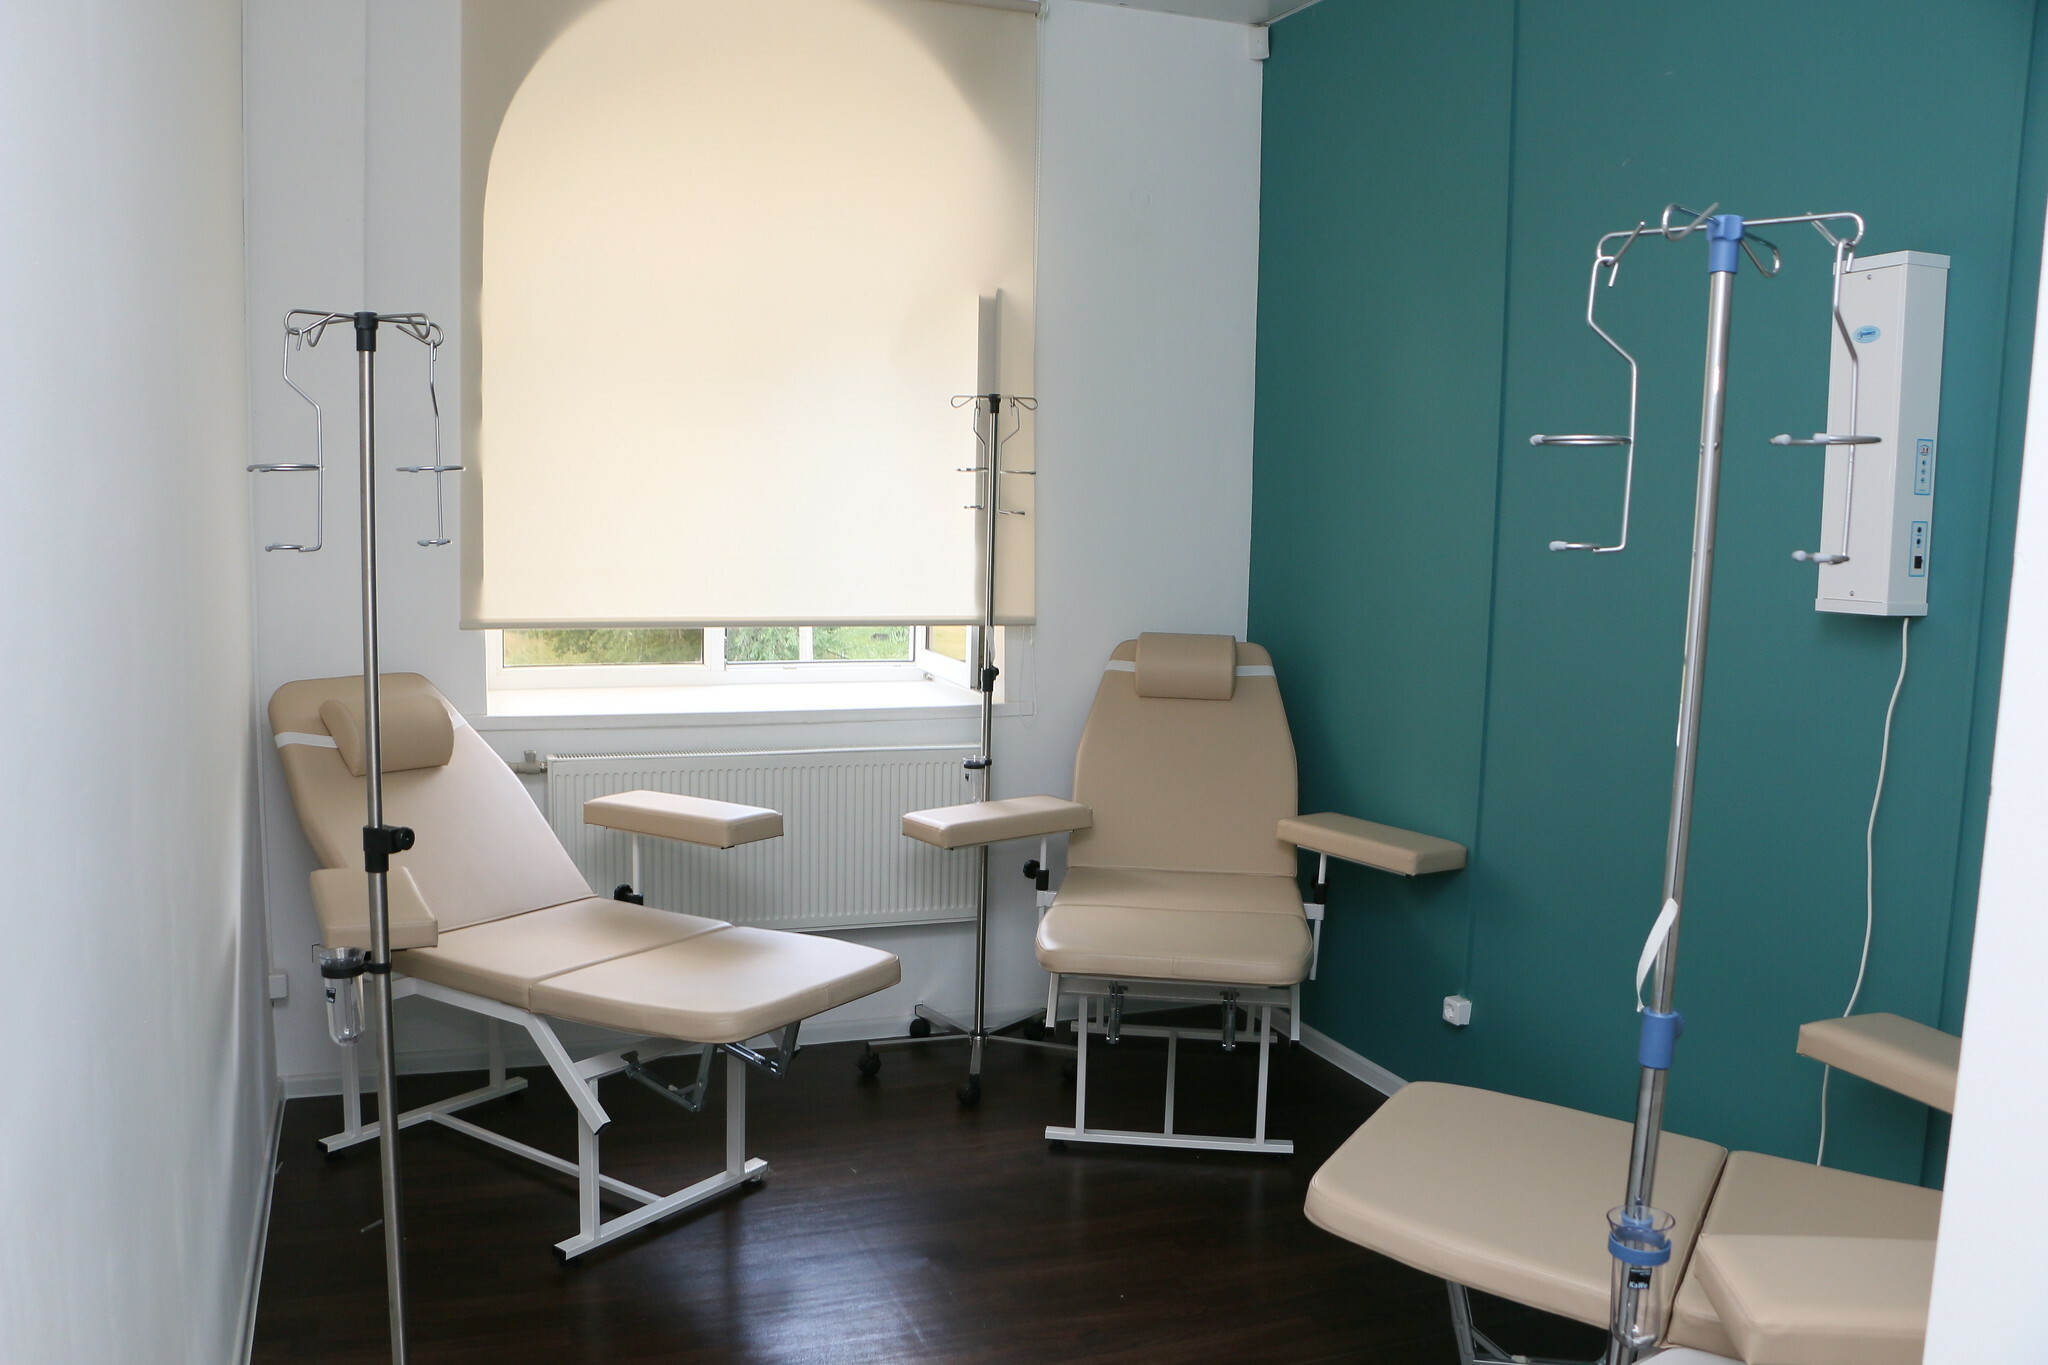 Поликлинику в Ленинском районе Ижевска открыли на месяц позже